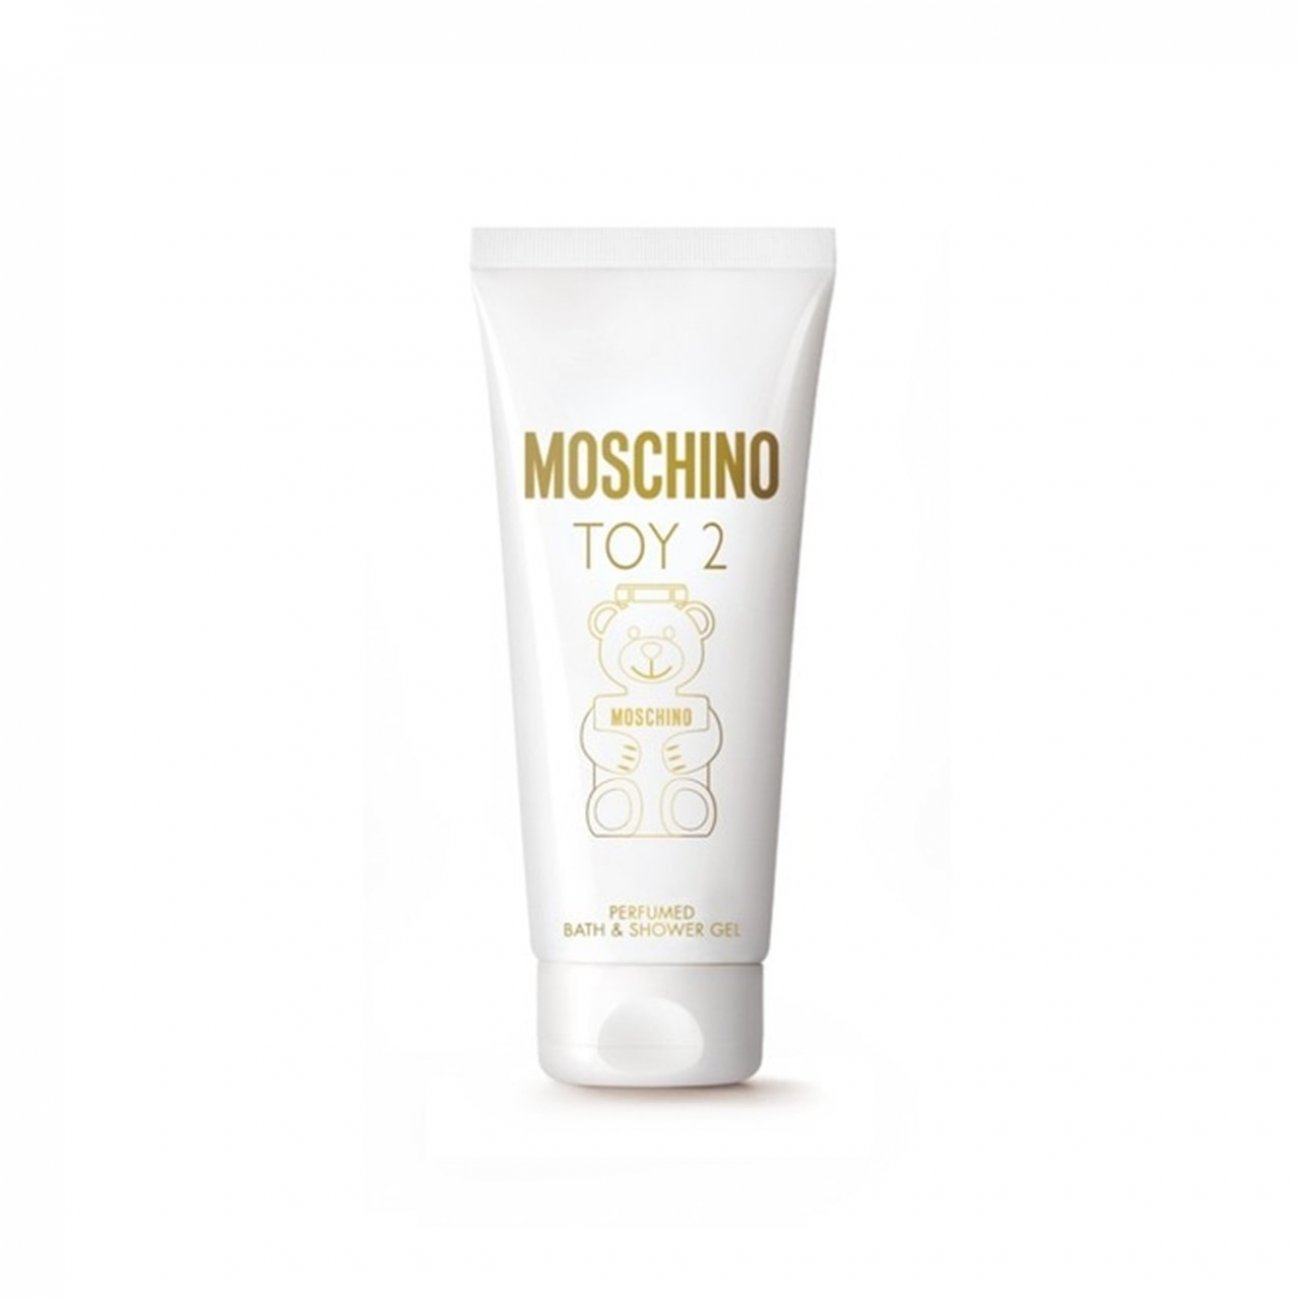 Comprar Moschino Toy 2 Bath & Shower Gel 200ml · Colombia